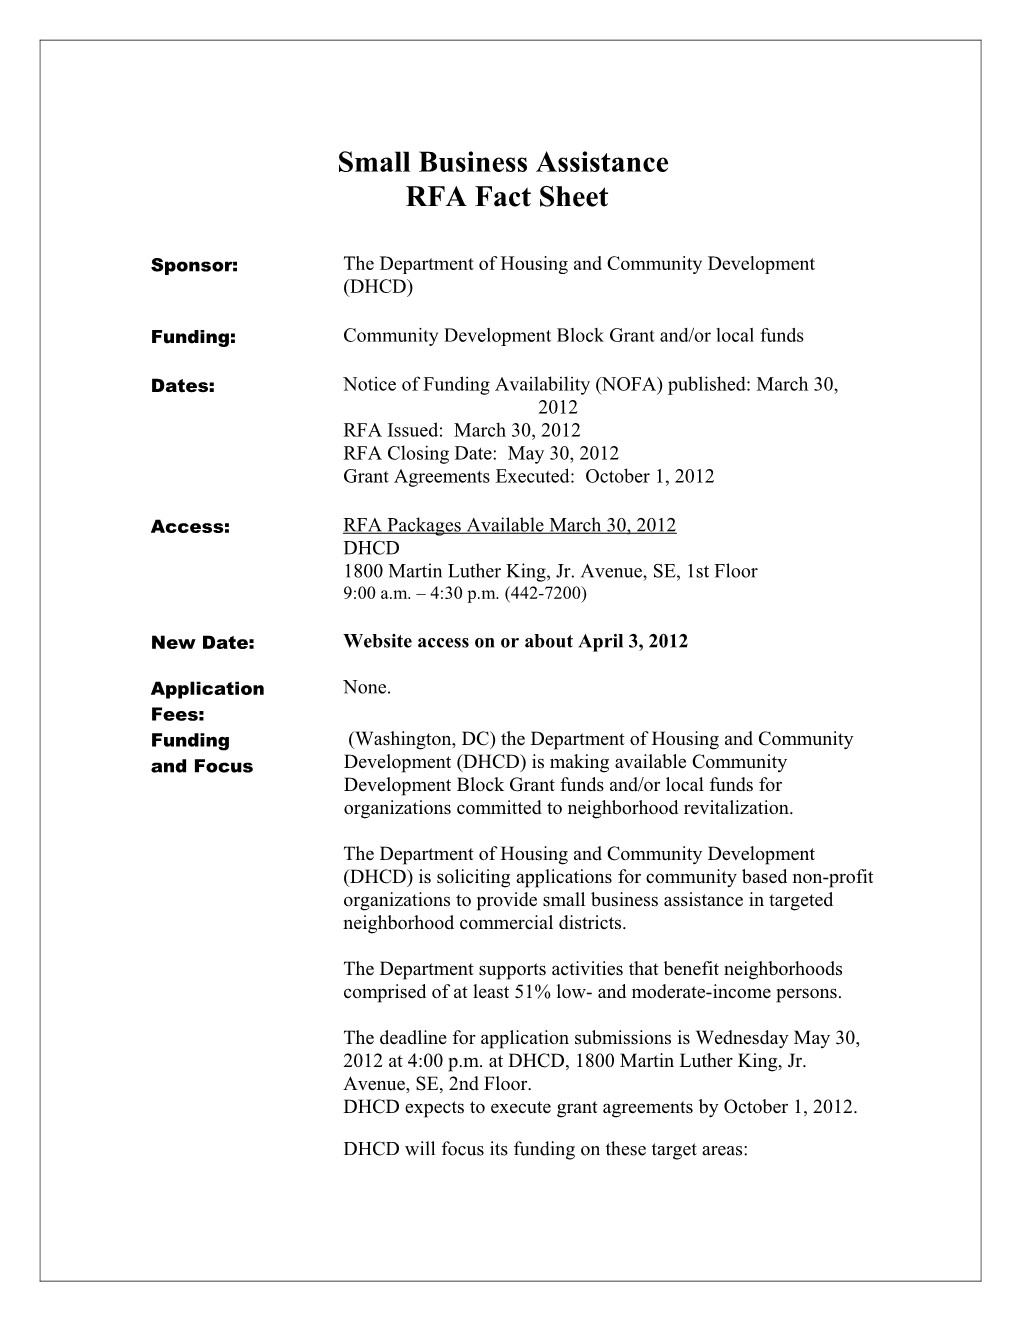 FY 2004 RFP Fact Sheet Update